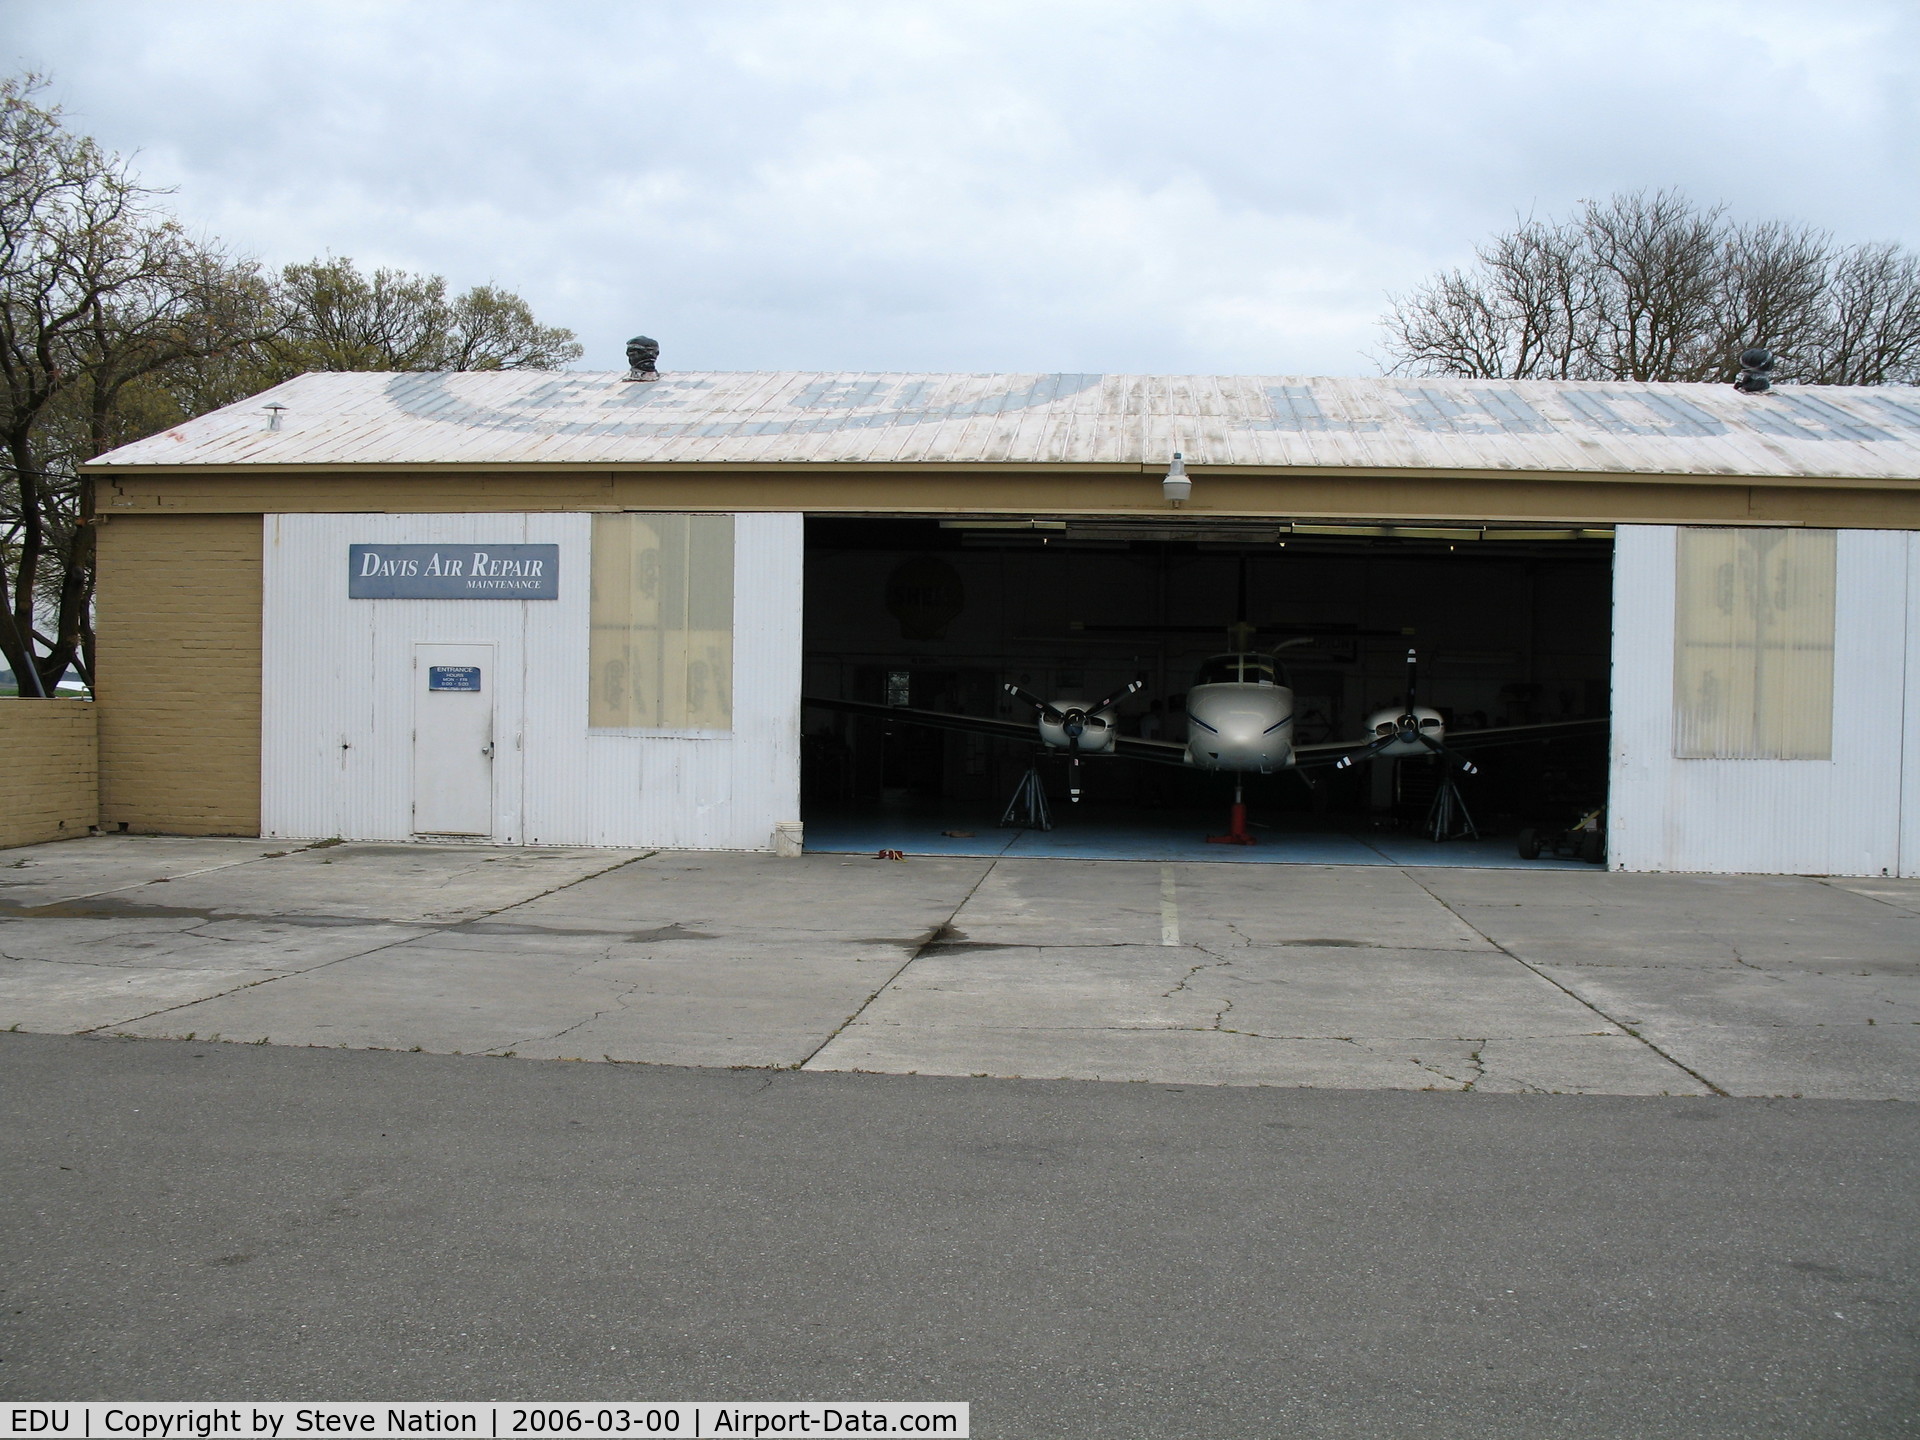 University Airport (EDU) - Davis Air Repair Hangar